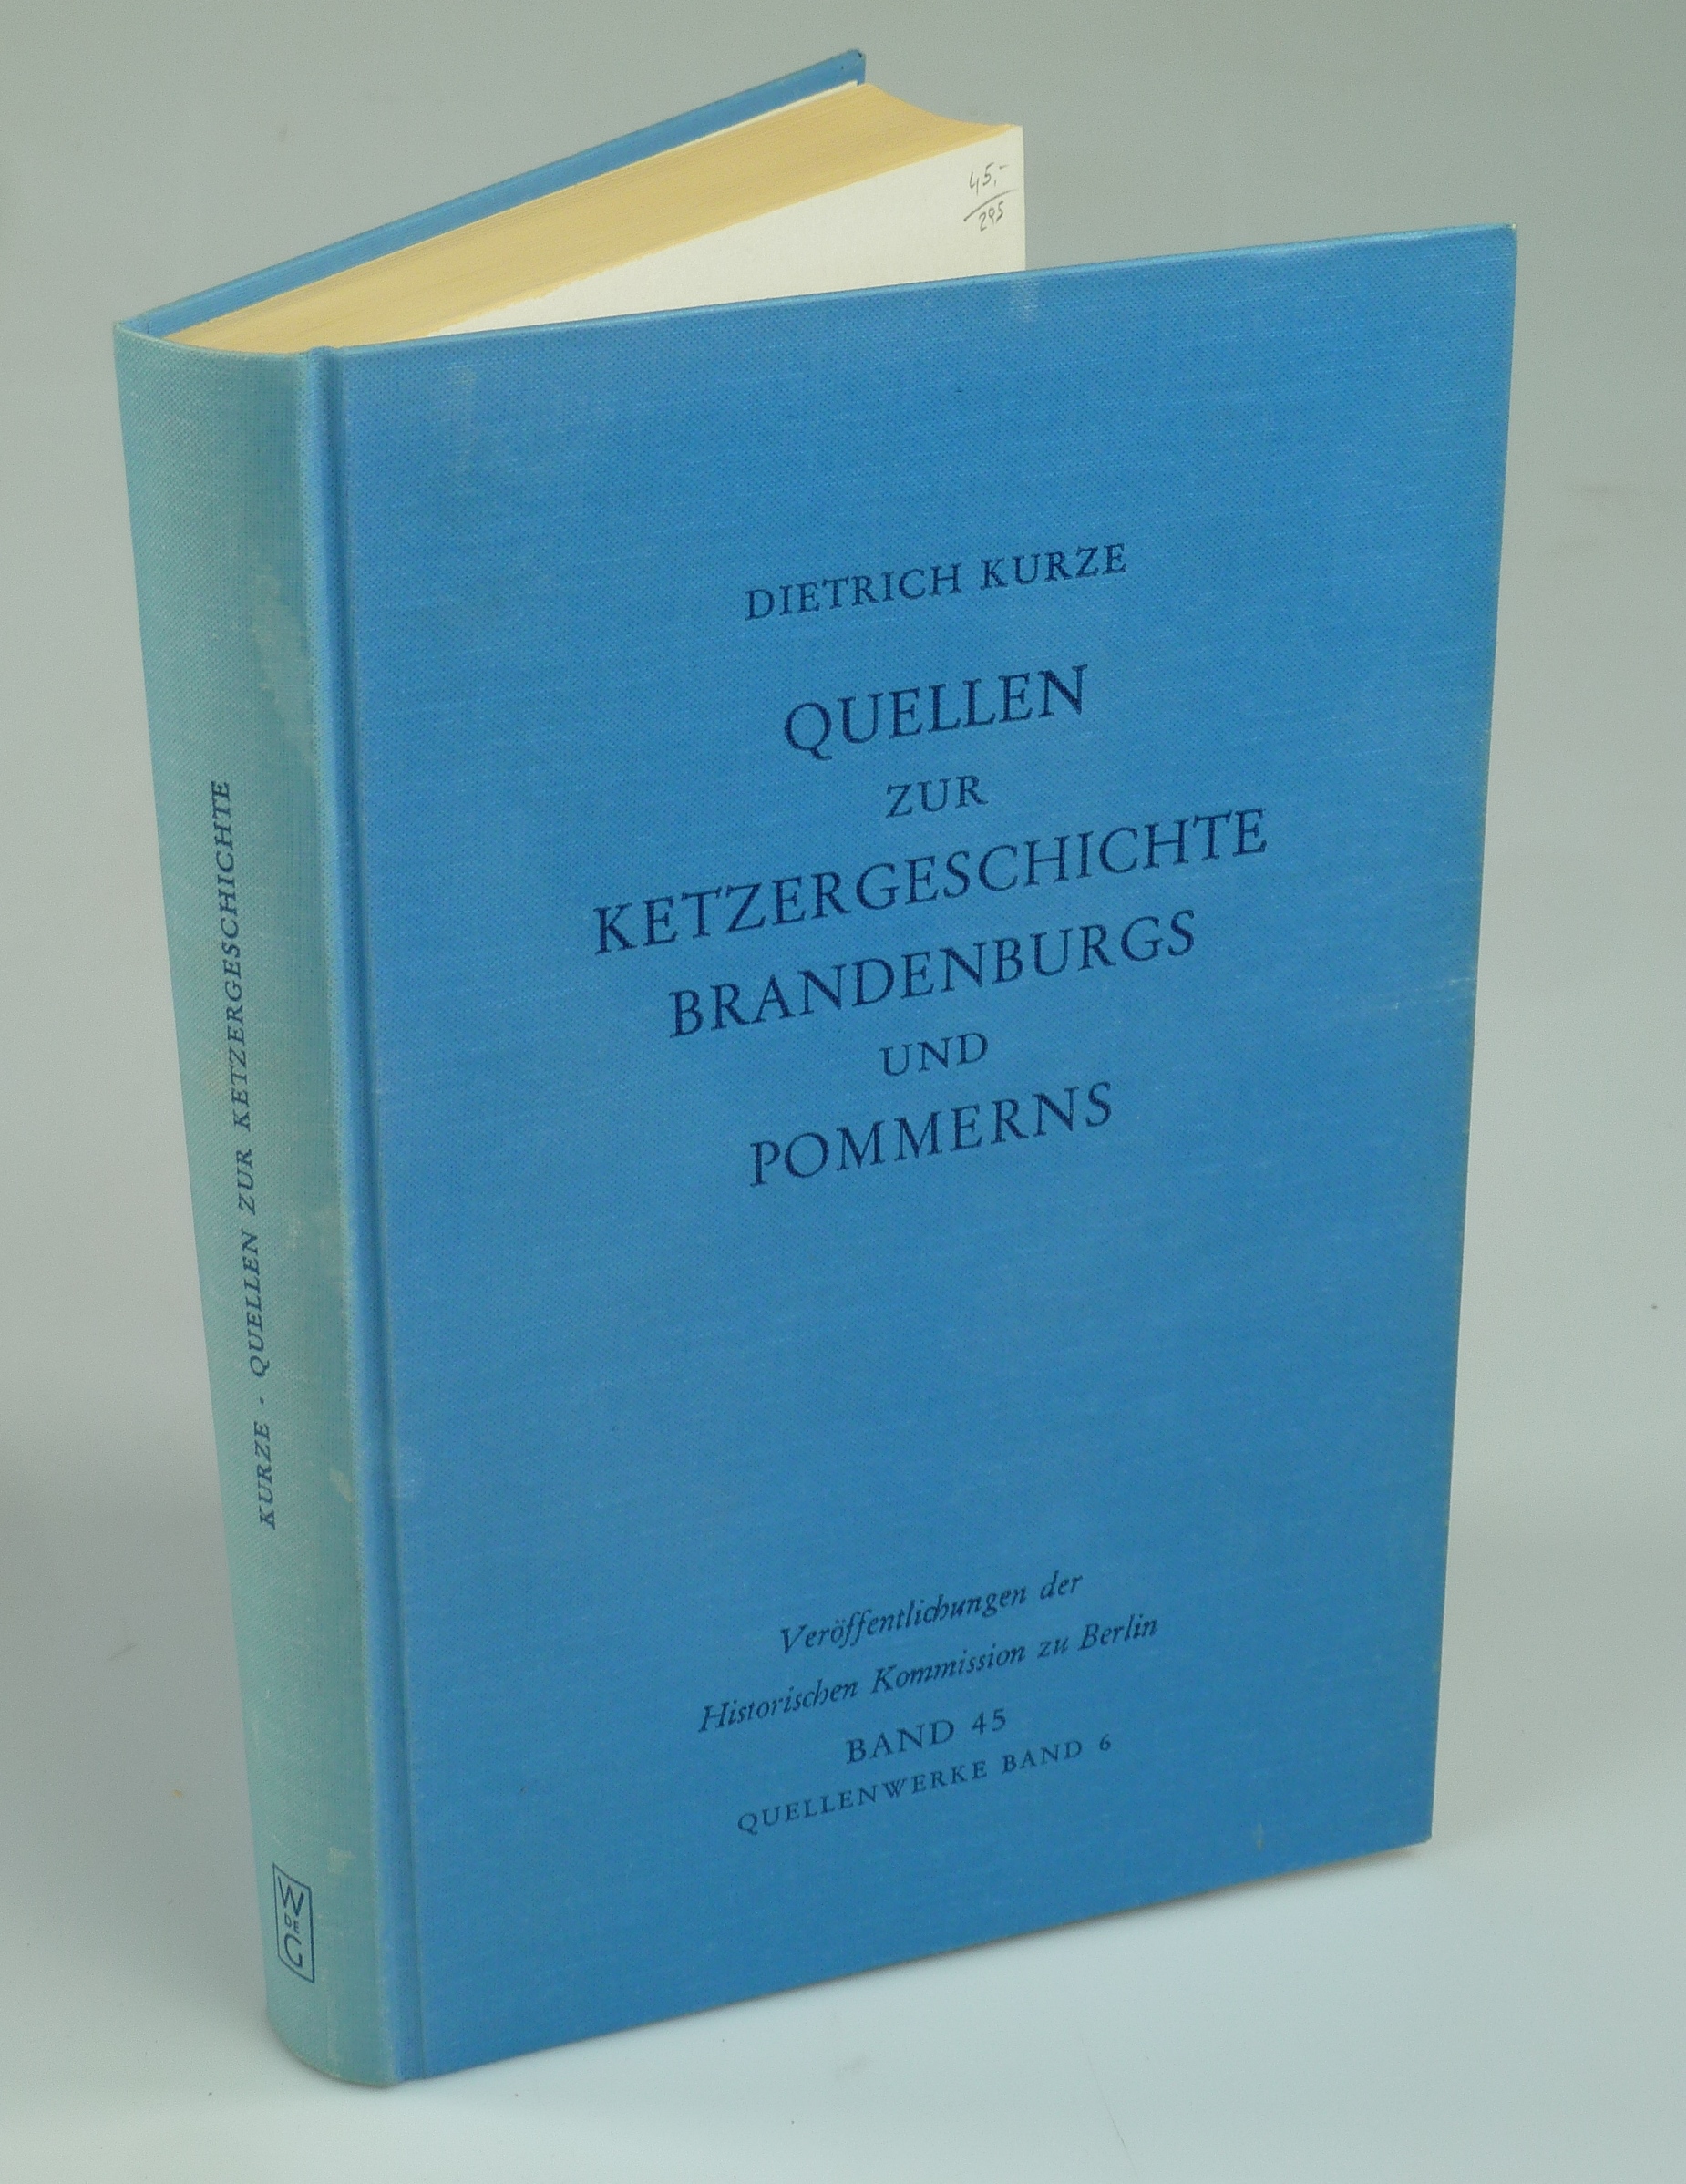 Quellen zur Ketzergeschichte Brandenburgs und Pommerns. - KURZE, Dietrich.